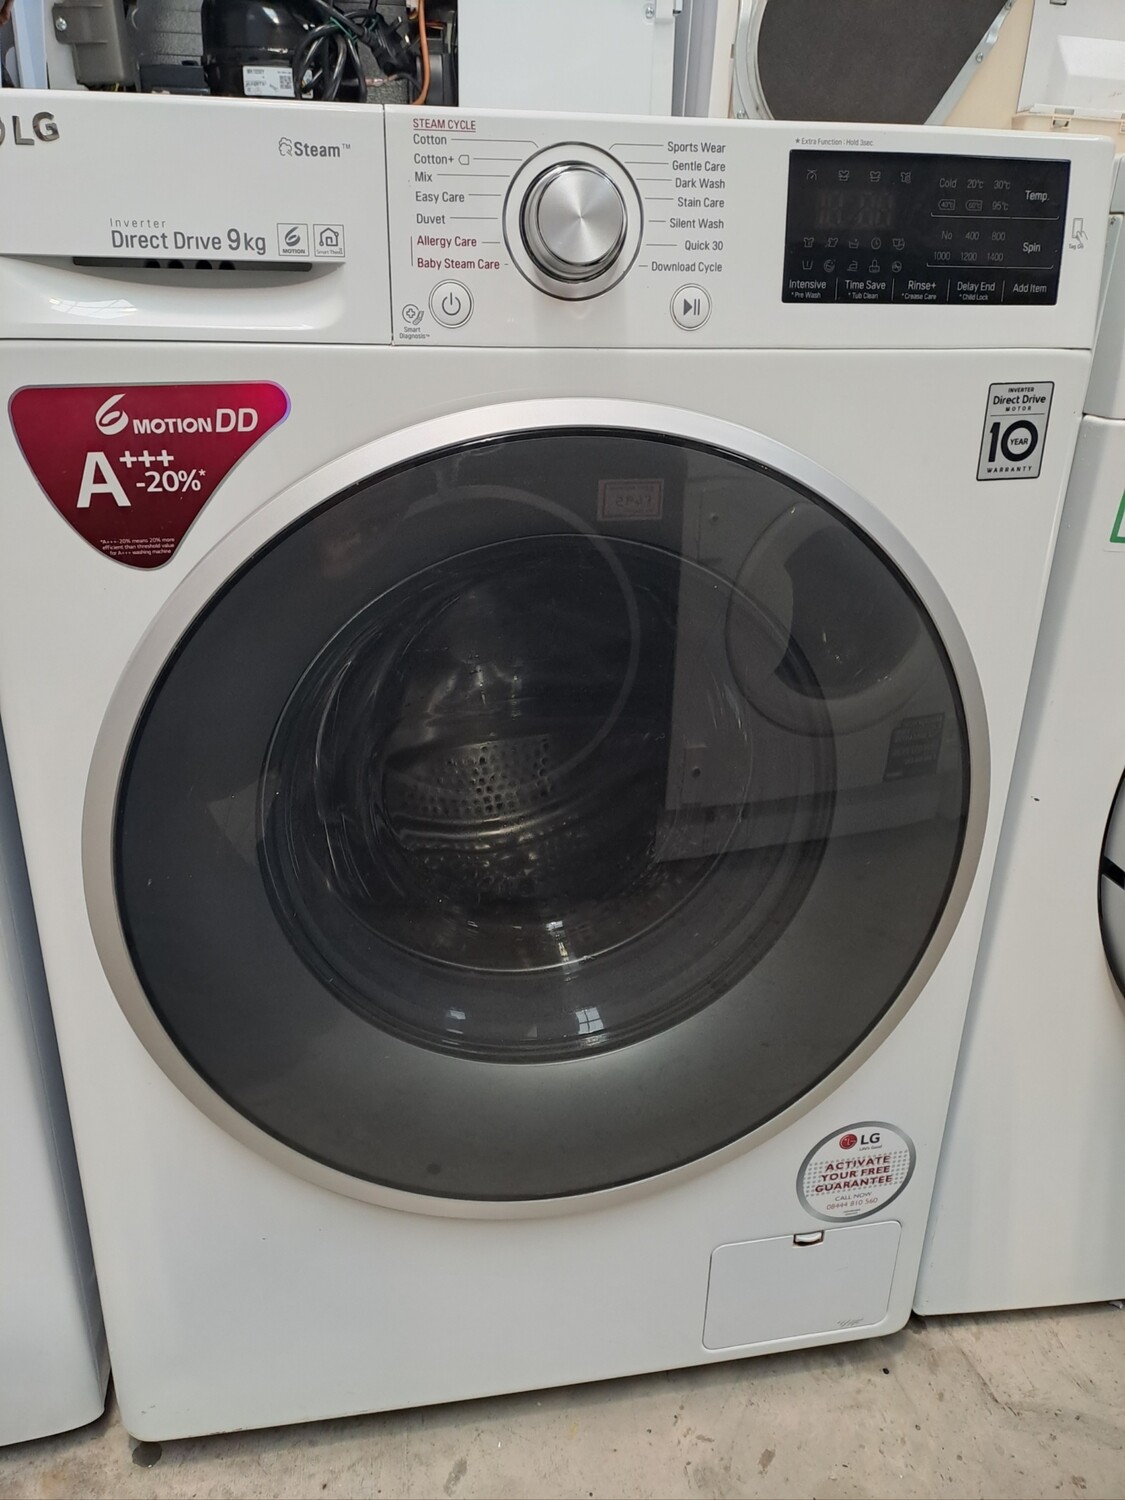 LG F4J609WS 9kg Load, 1400 Spin Washing Machine - White - Refurbished - 6 Month Guarantee